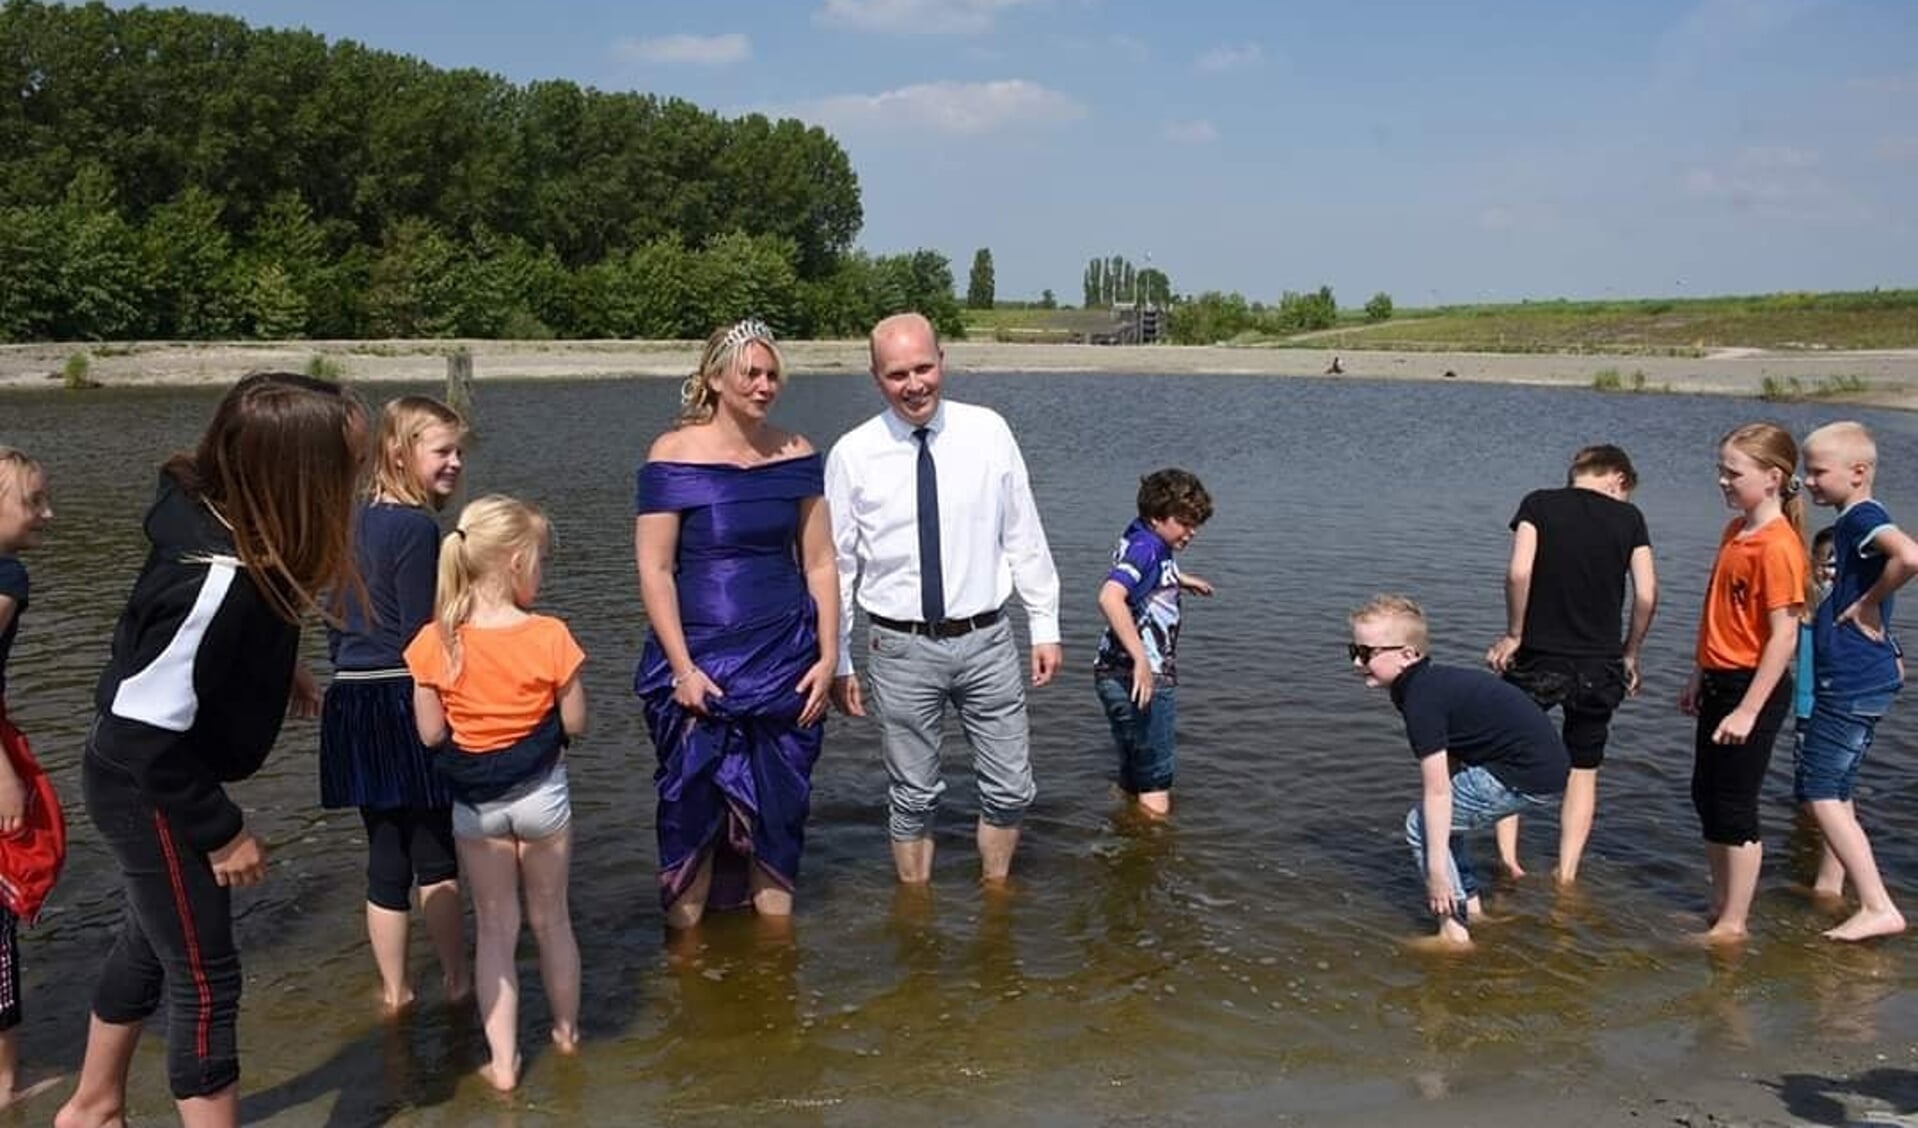 Toenmalig wethouder Harmannus Blok van de gemeente Het Hogeland opende samen met garnalenkoningin Reliejanne Smit en schoolkinderen bijna twee jaar geleden  al pootjebadend  de zwemplas en het strand in Zoutkamp.